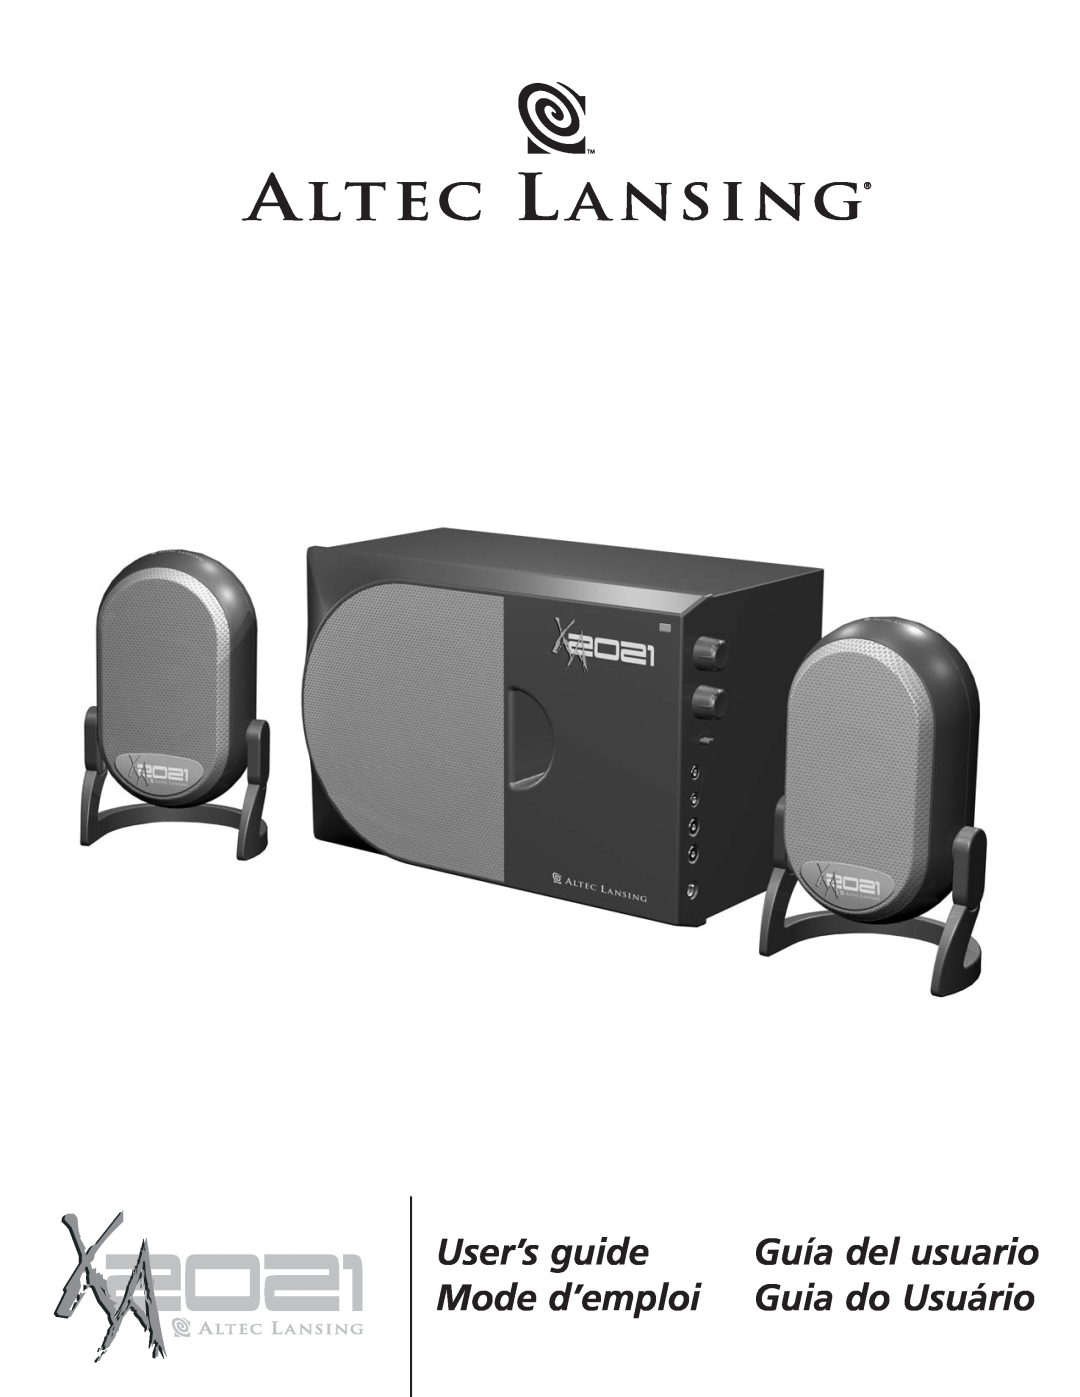 Altec Lansing XA2021 manual User’s guide, Mode d’emploi, Guía del usuario, Guia do Usuário 